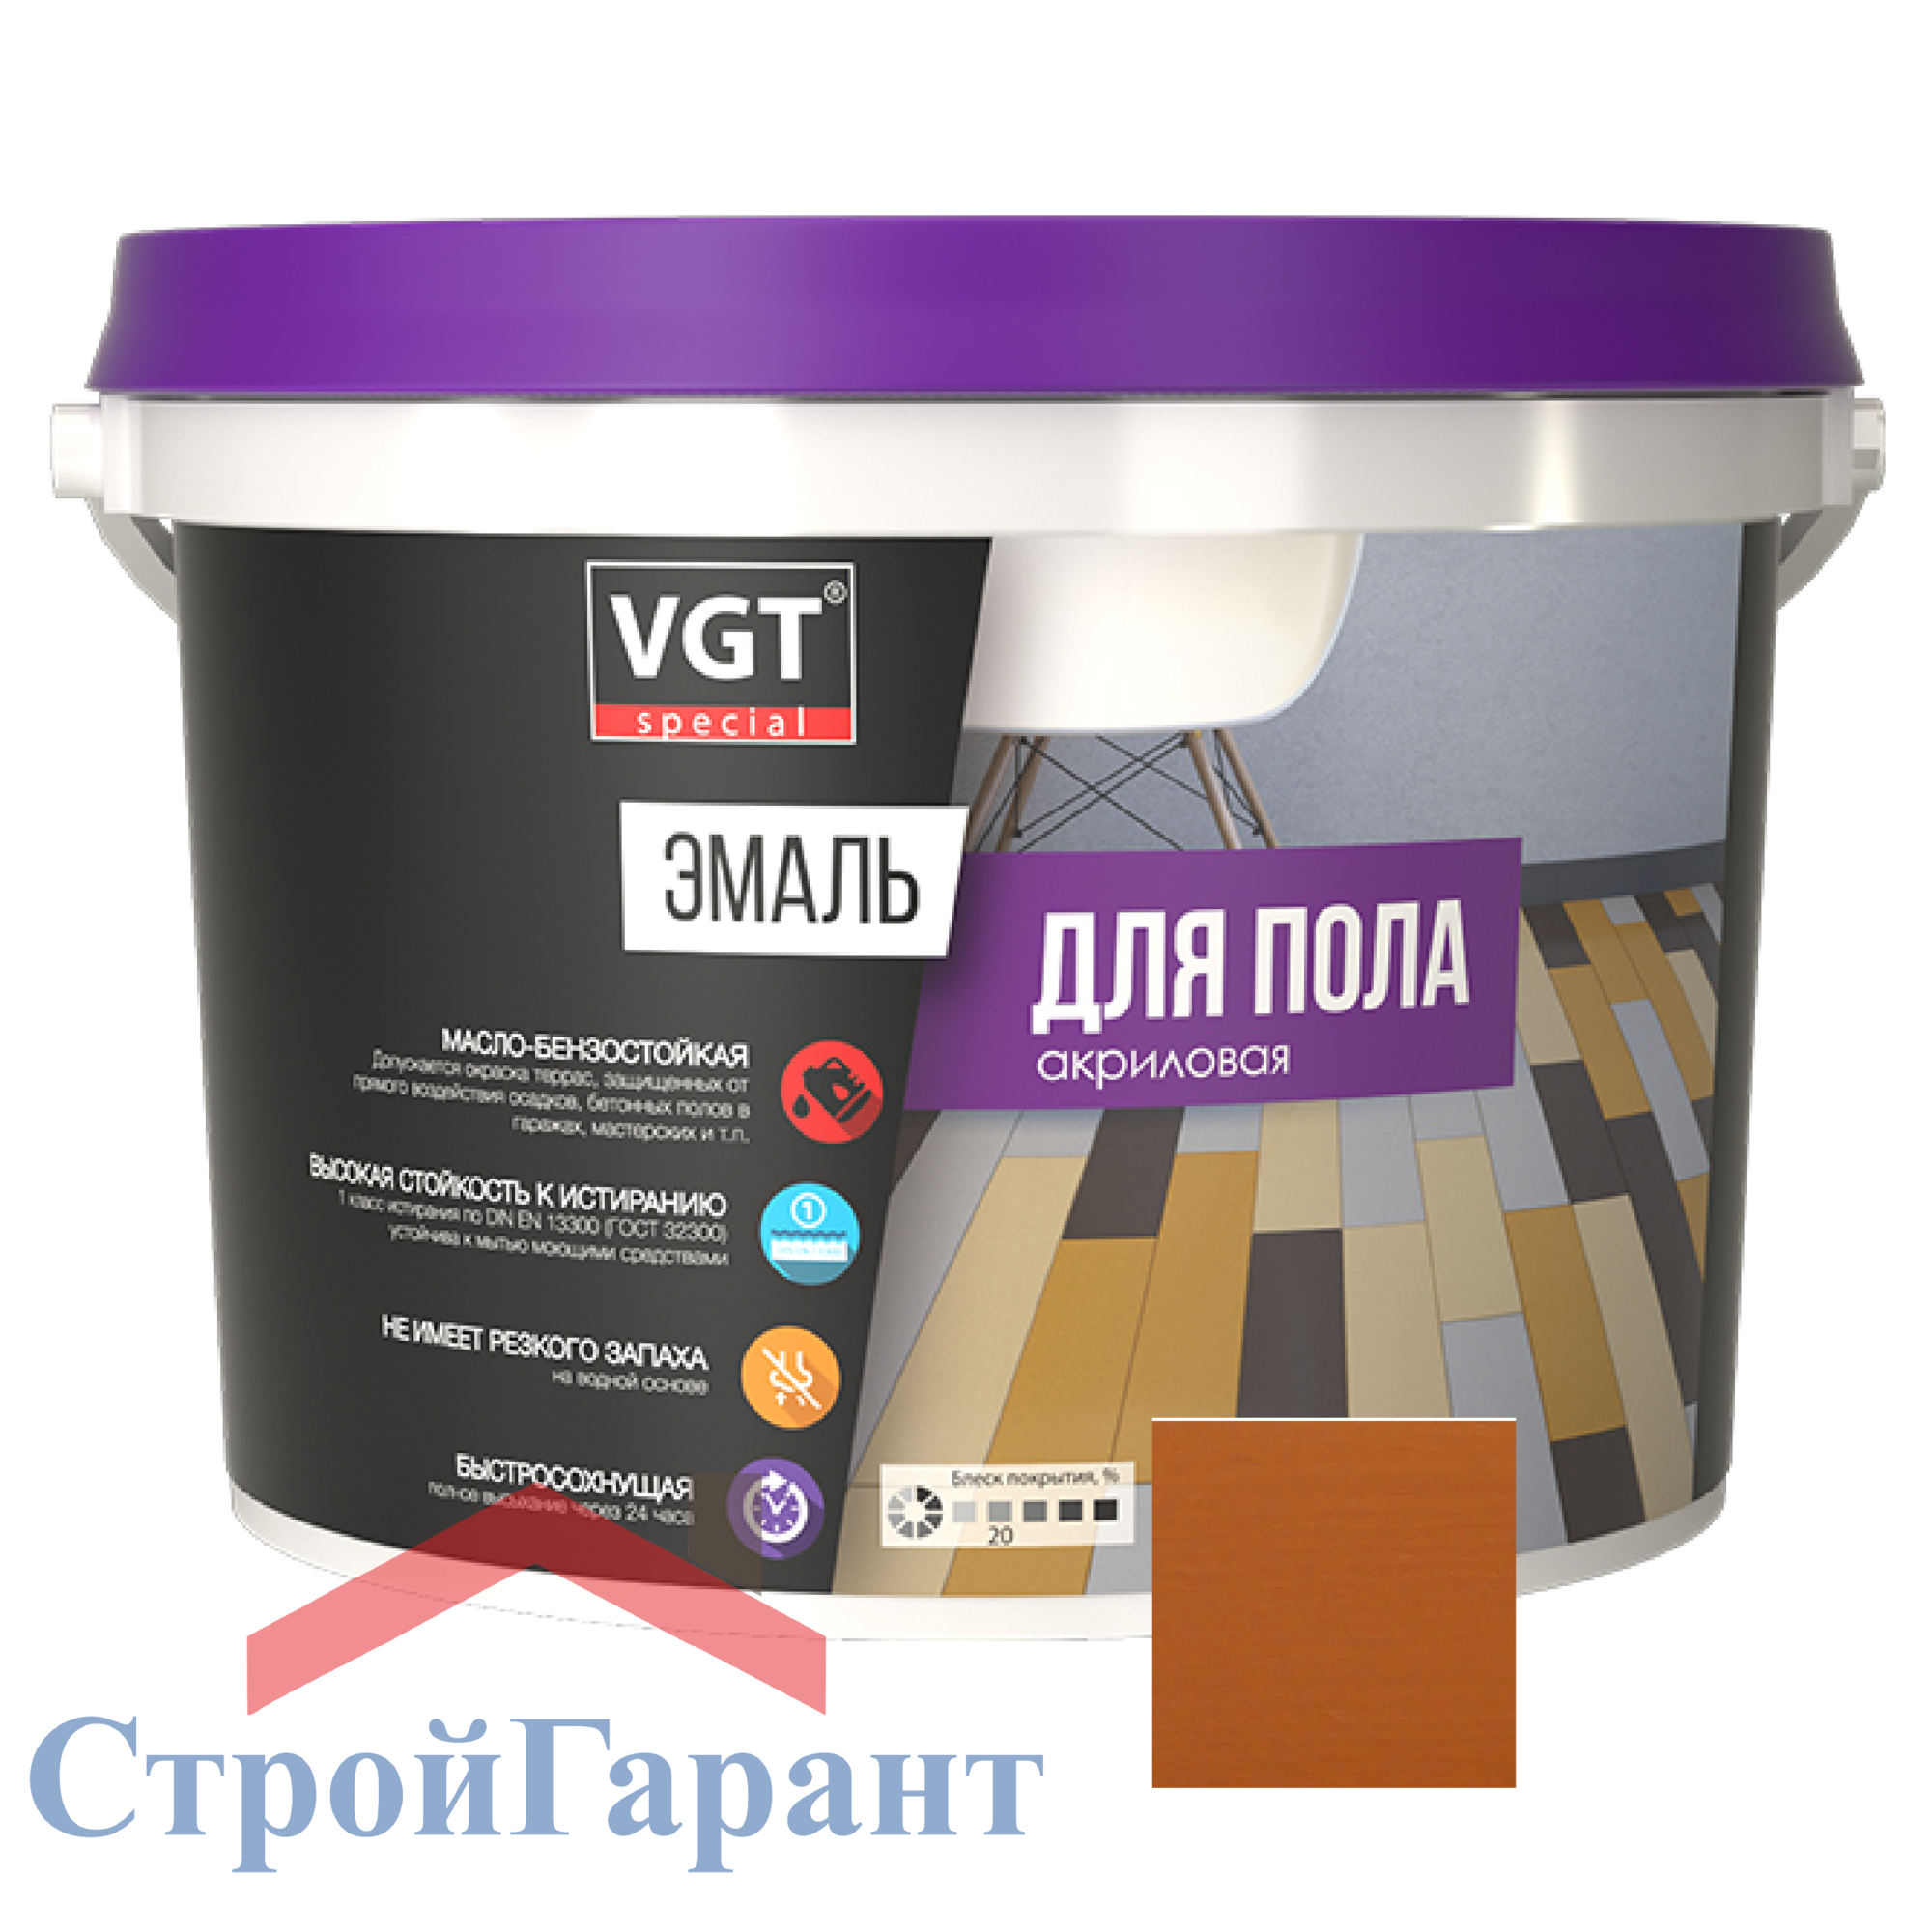 Эмаль для пола Профи ВД-АК-1179 VGT, 1кг орех (желто-коричневая)